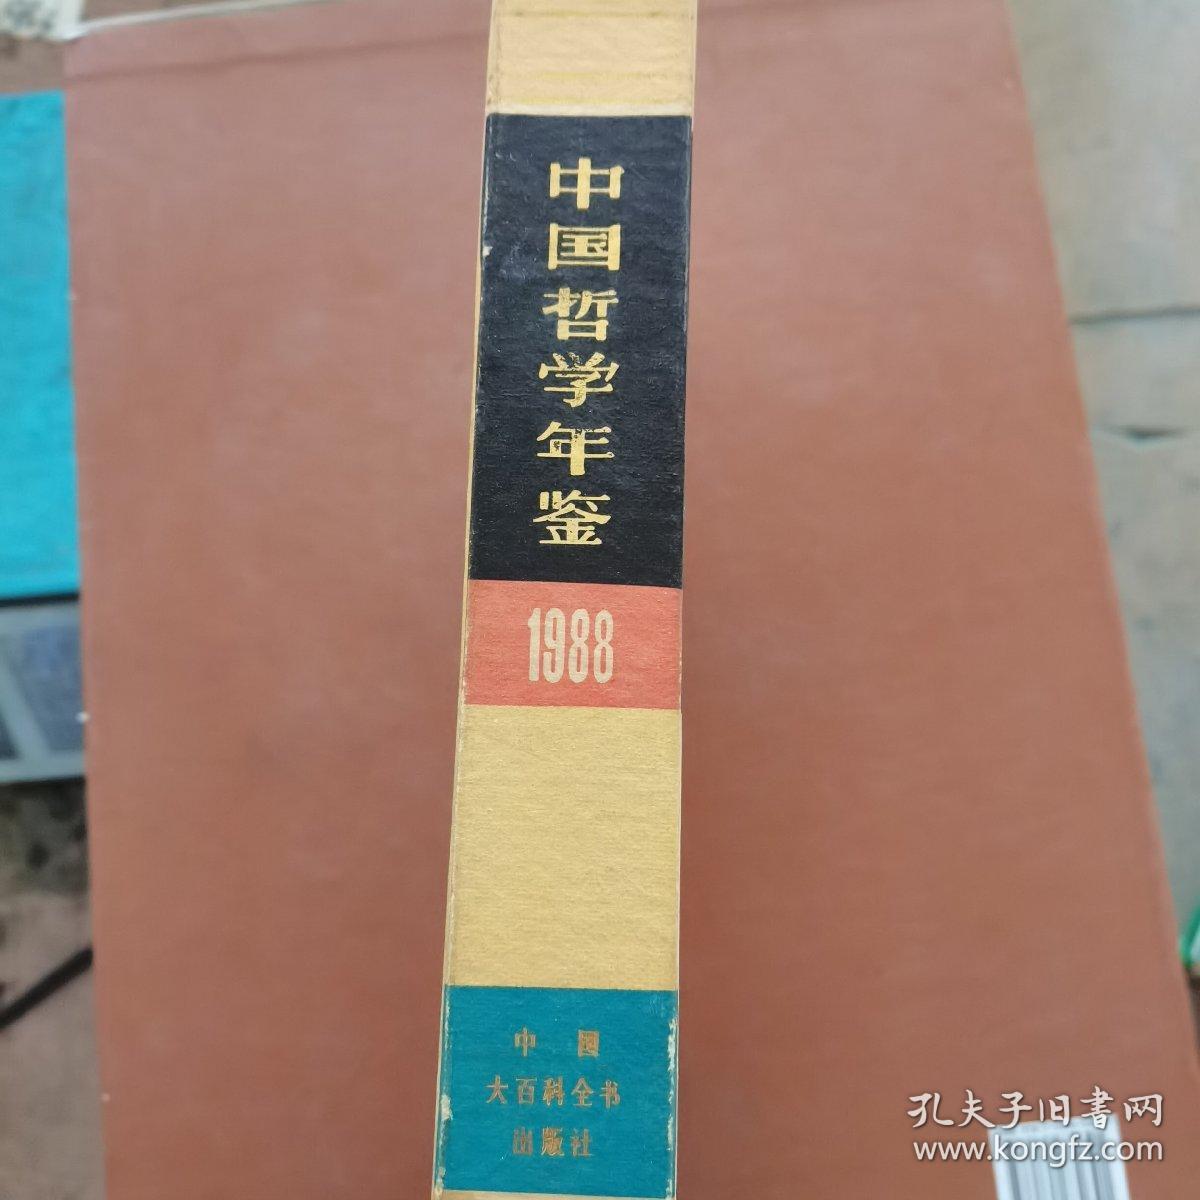 中国哲学年鉴1988